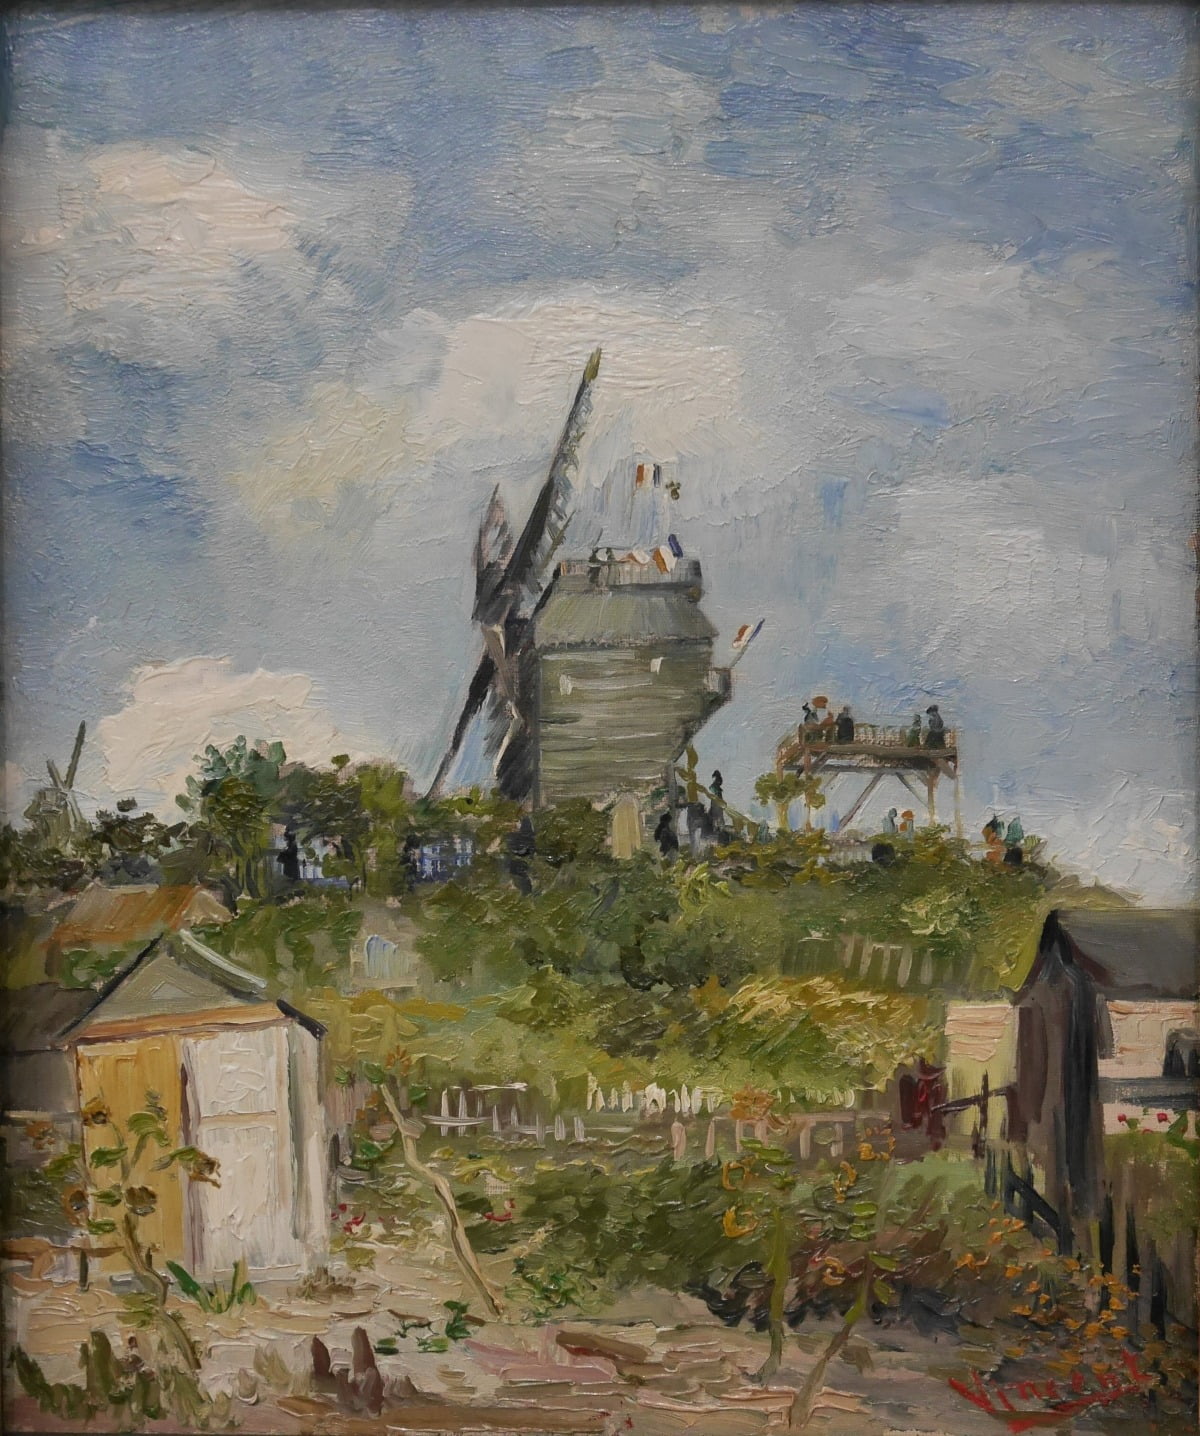 반 고흐 「물랑 들 라 갈레트(Moulin de la galette)」(1886년)